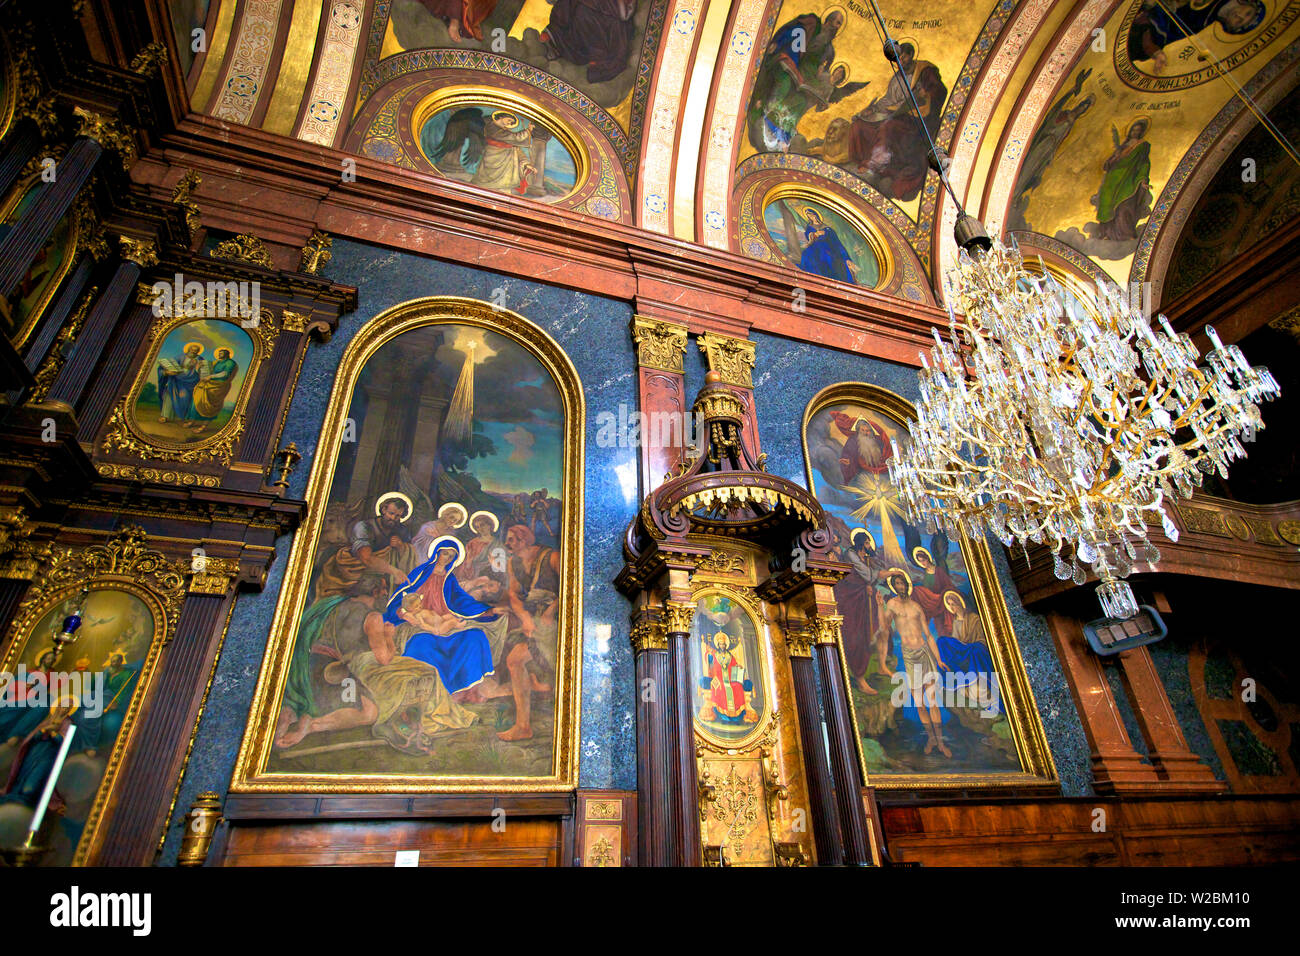 Intérieur de l'Église grecque orthodoxe de la Sainte Trinité, Vienne, Autriche, Europe Centrale Banque D'Images